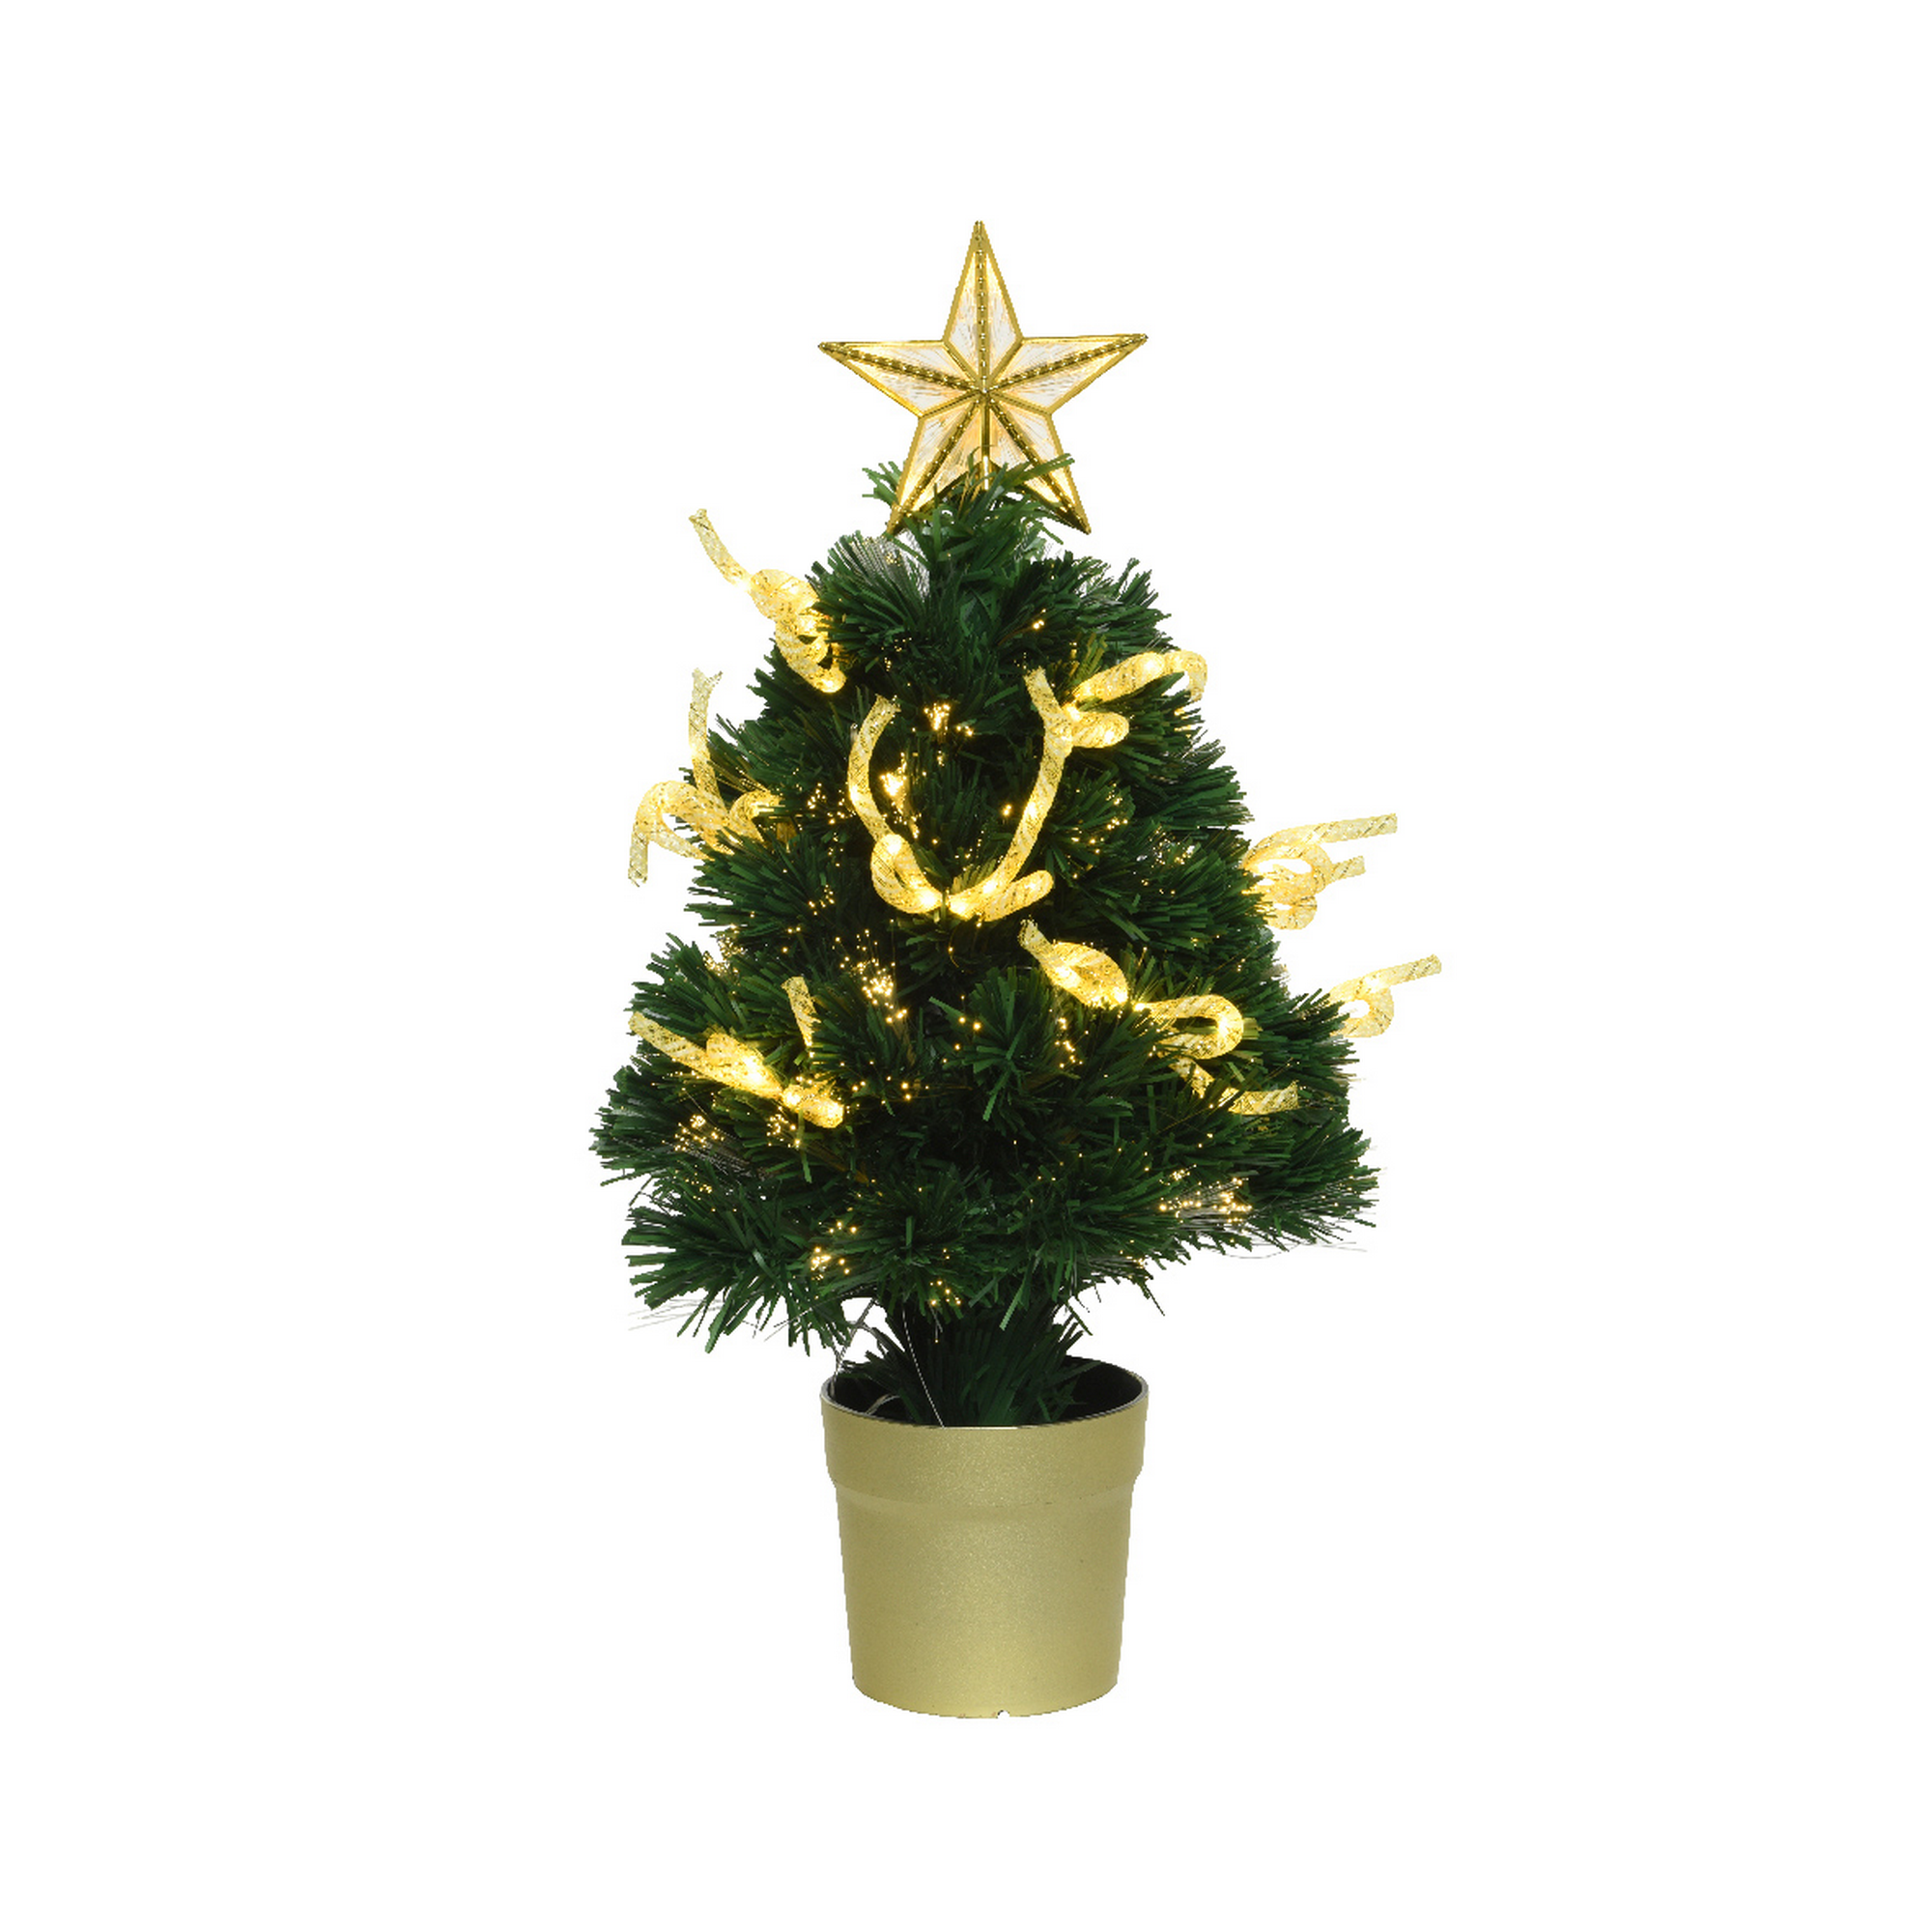 Künstlicher Weihnachtsbaum 'Cornwall' grün 60 cm, mit LED-Beleuchtung + product picture